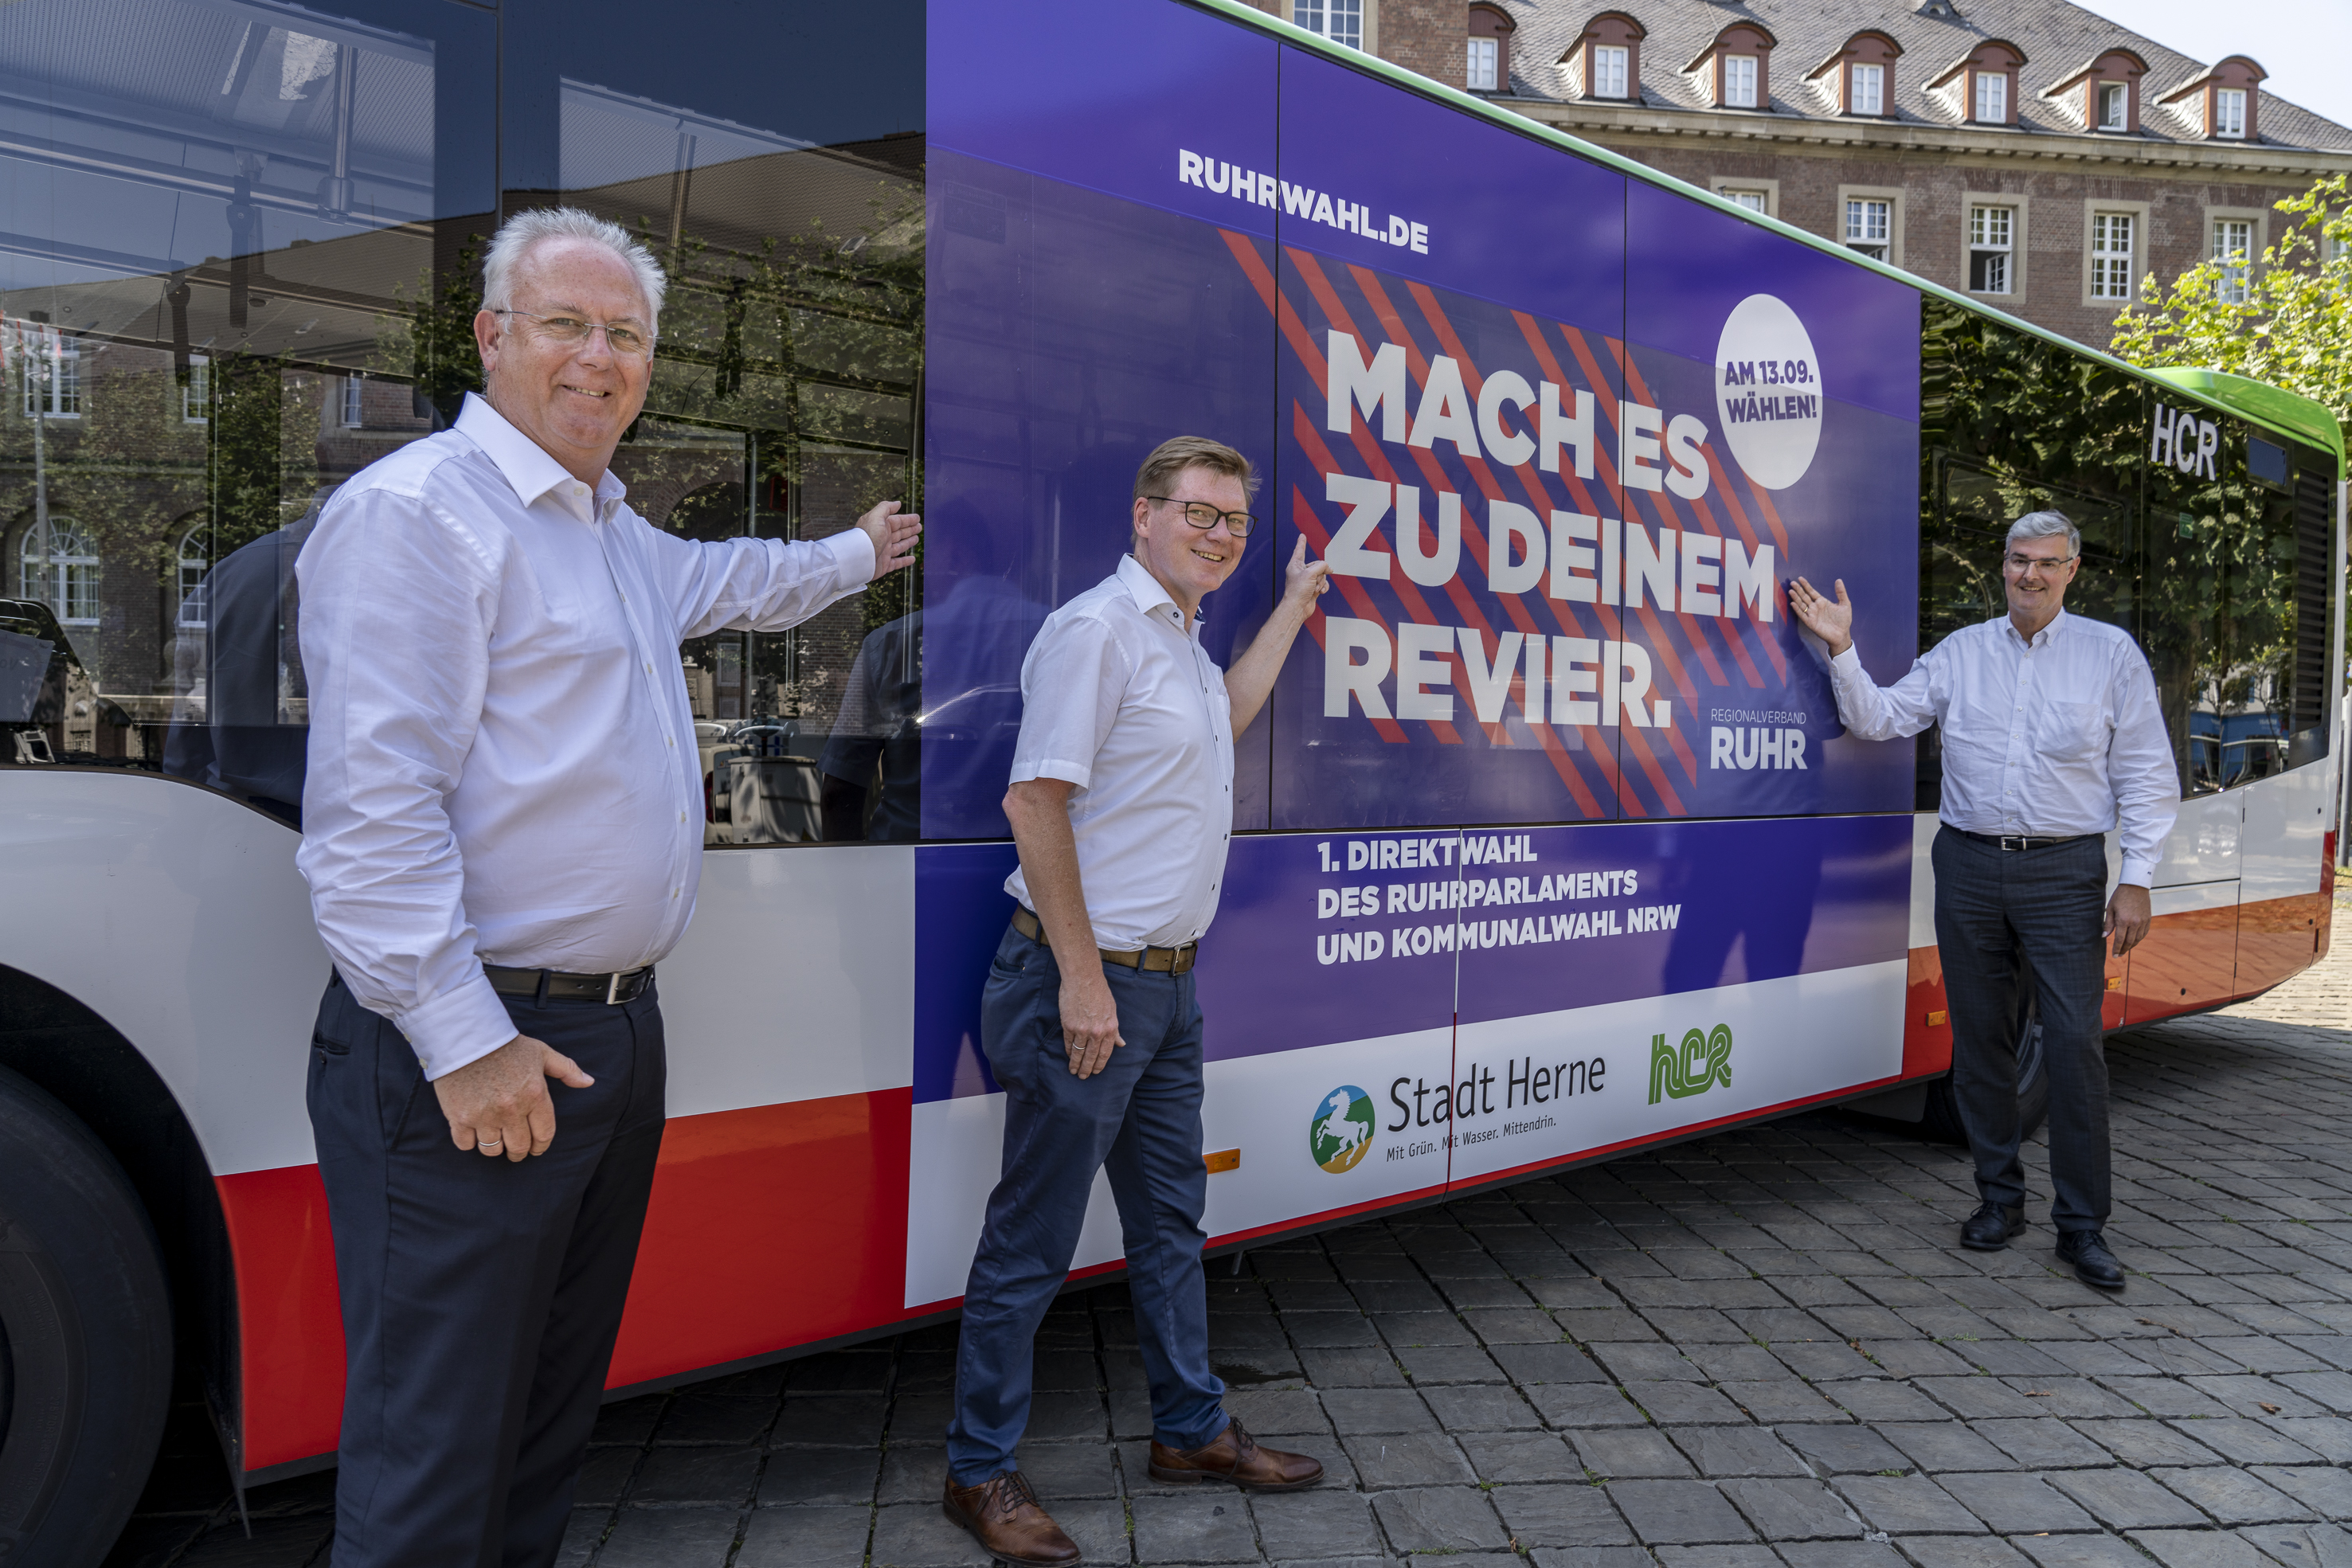 Präsentieren den Bus zur Ruhrwahl: Dr. Hans Werner Klee, Kämmerer der Stadt Herne, HCR-Pressesprecher Dirk Rogalla und Markus Schlüter, RVR-Beigeordneter Wirtschaft (v.l.)